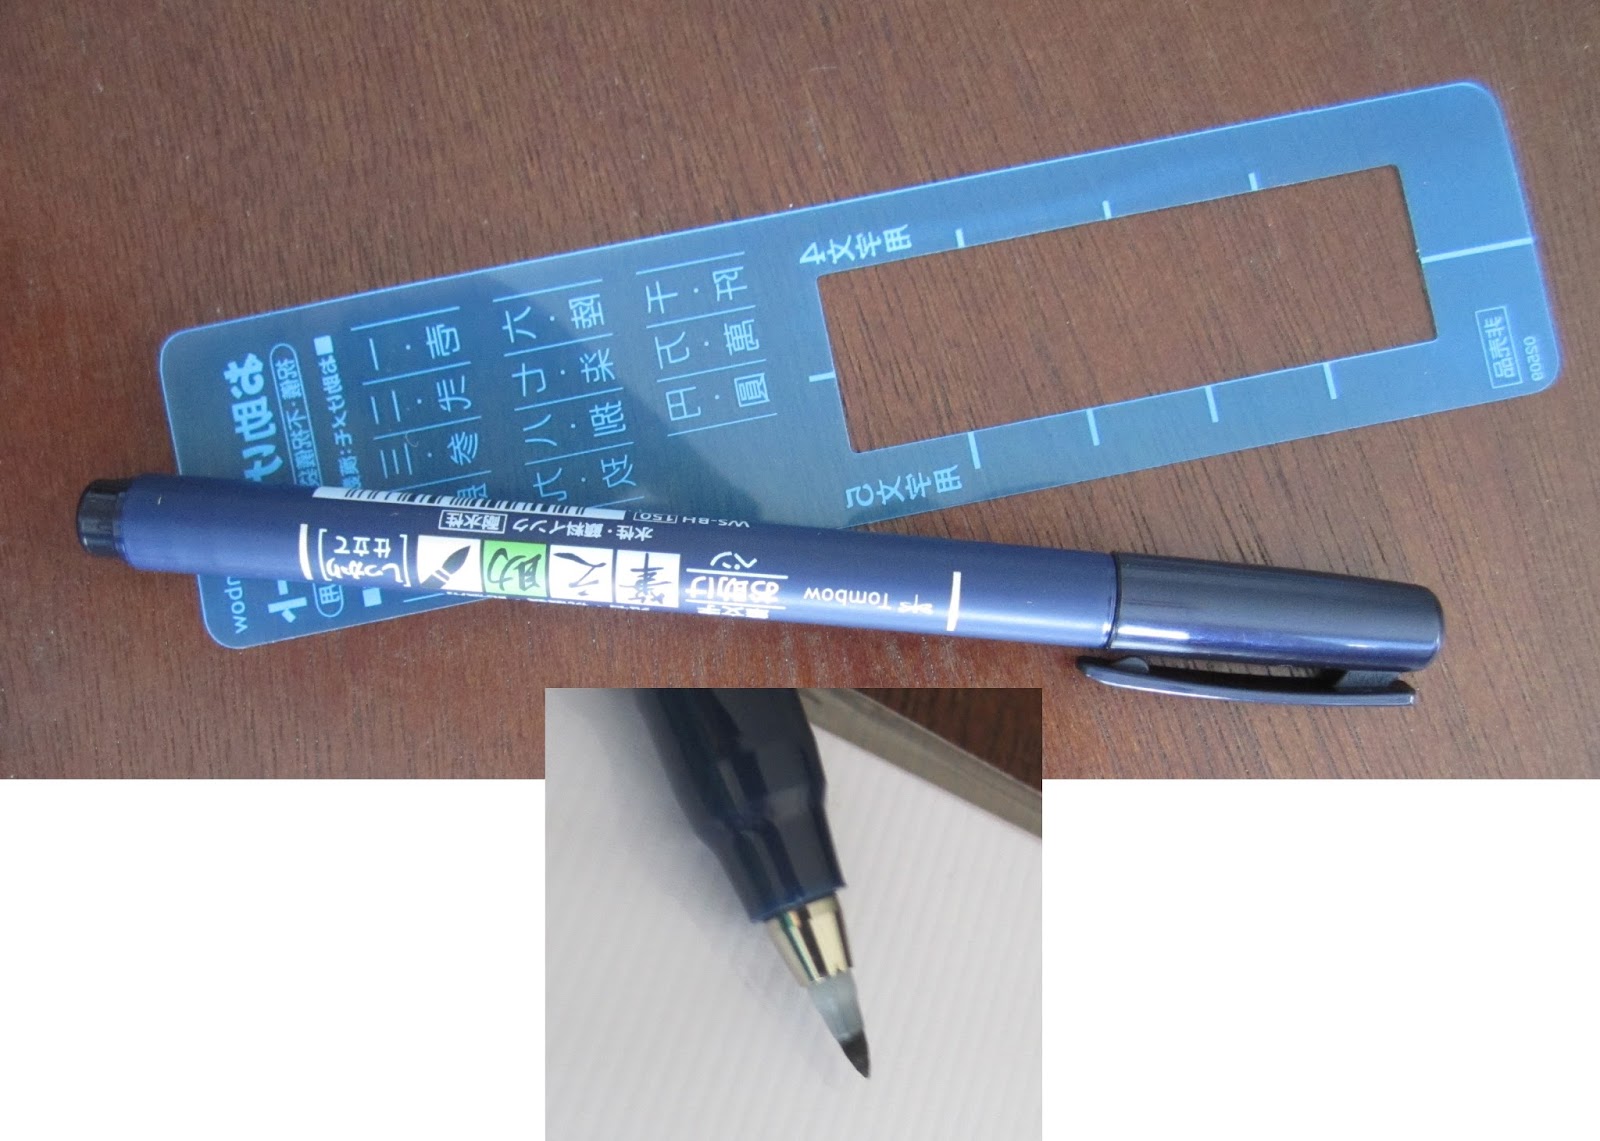 Tombow Dual Brush Pens - Blues